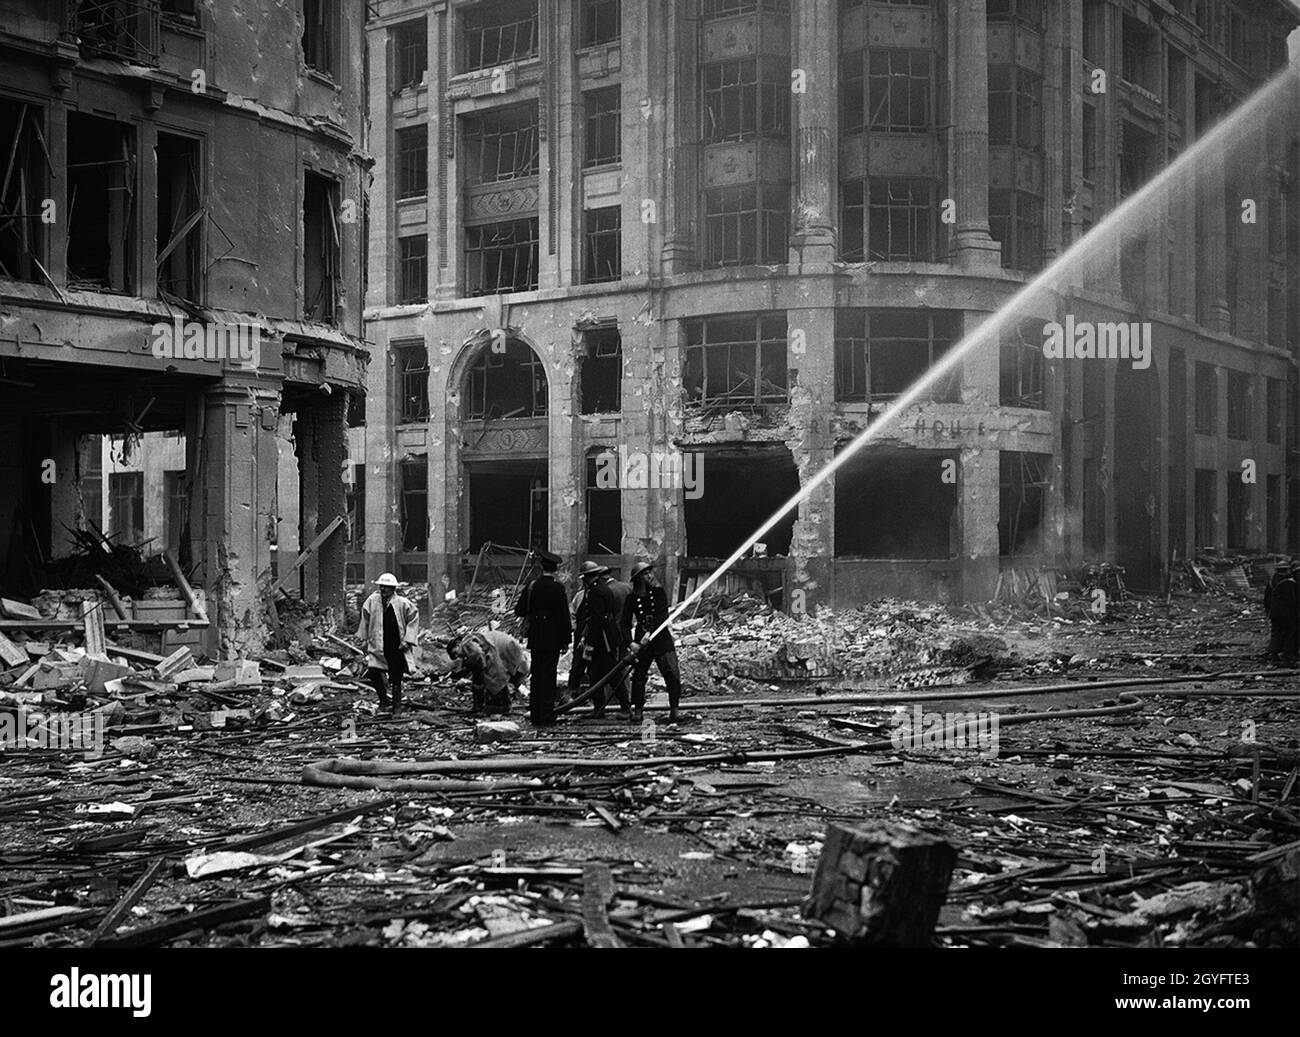 Des pompiers vaporisant de l'eau sur des bâtiments en feu pendant le Blitz, Londres, 1940 Banque D'Images